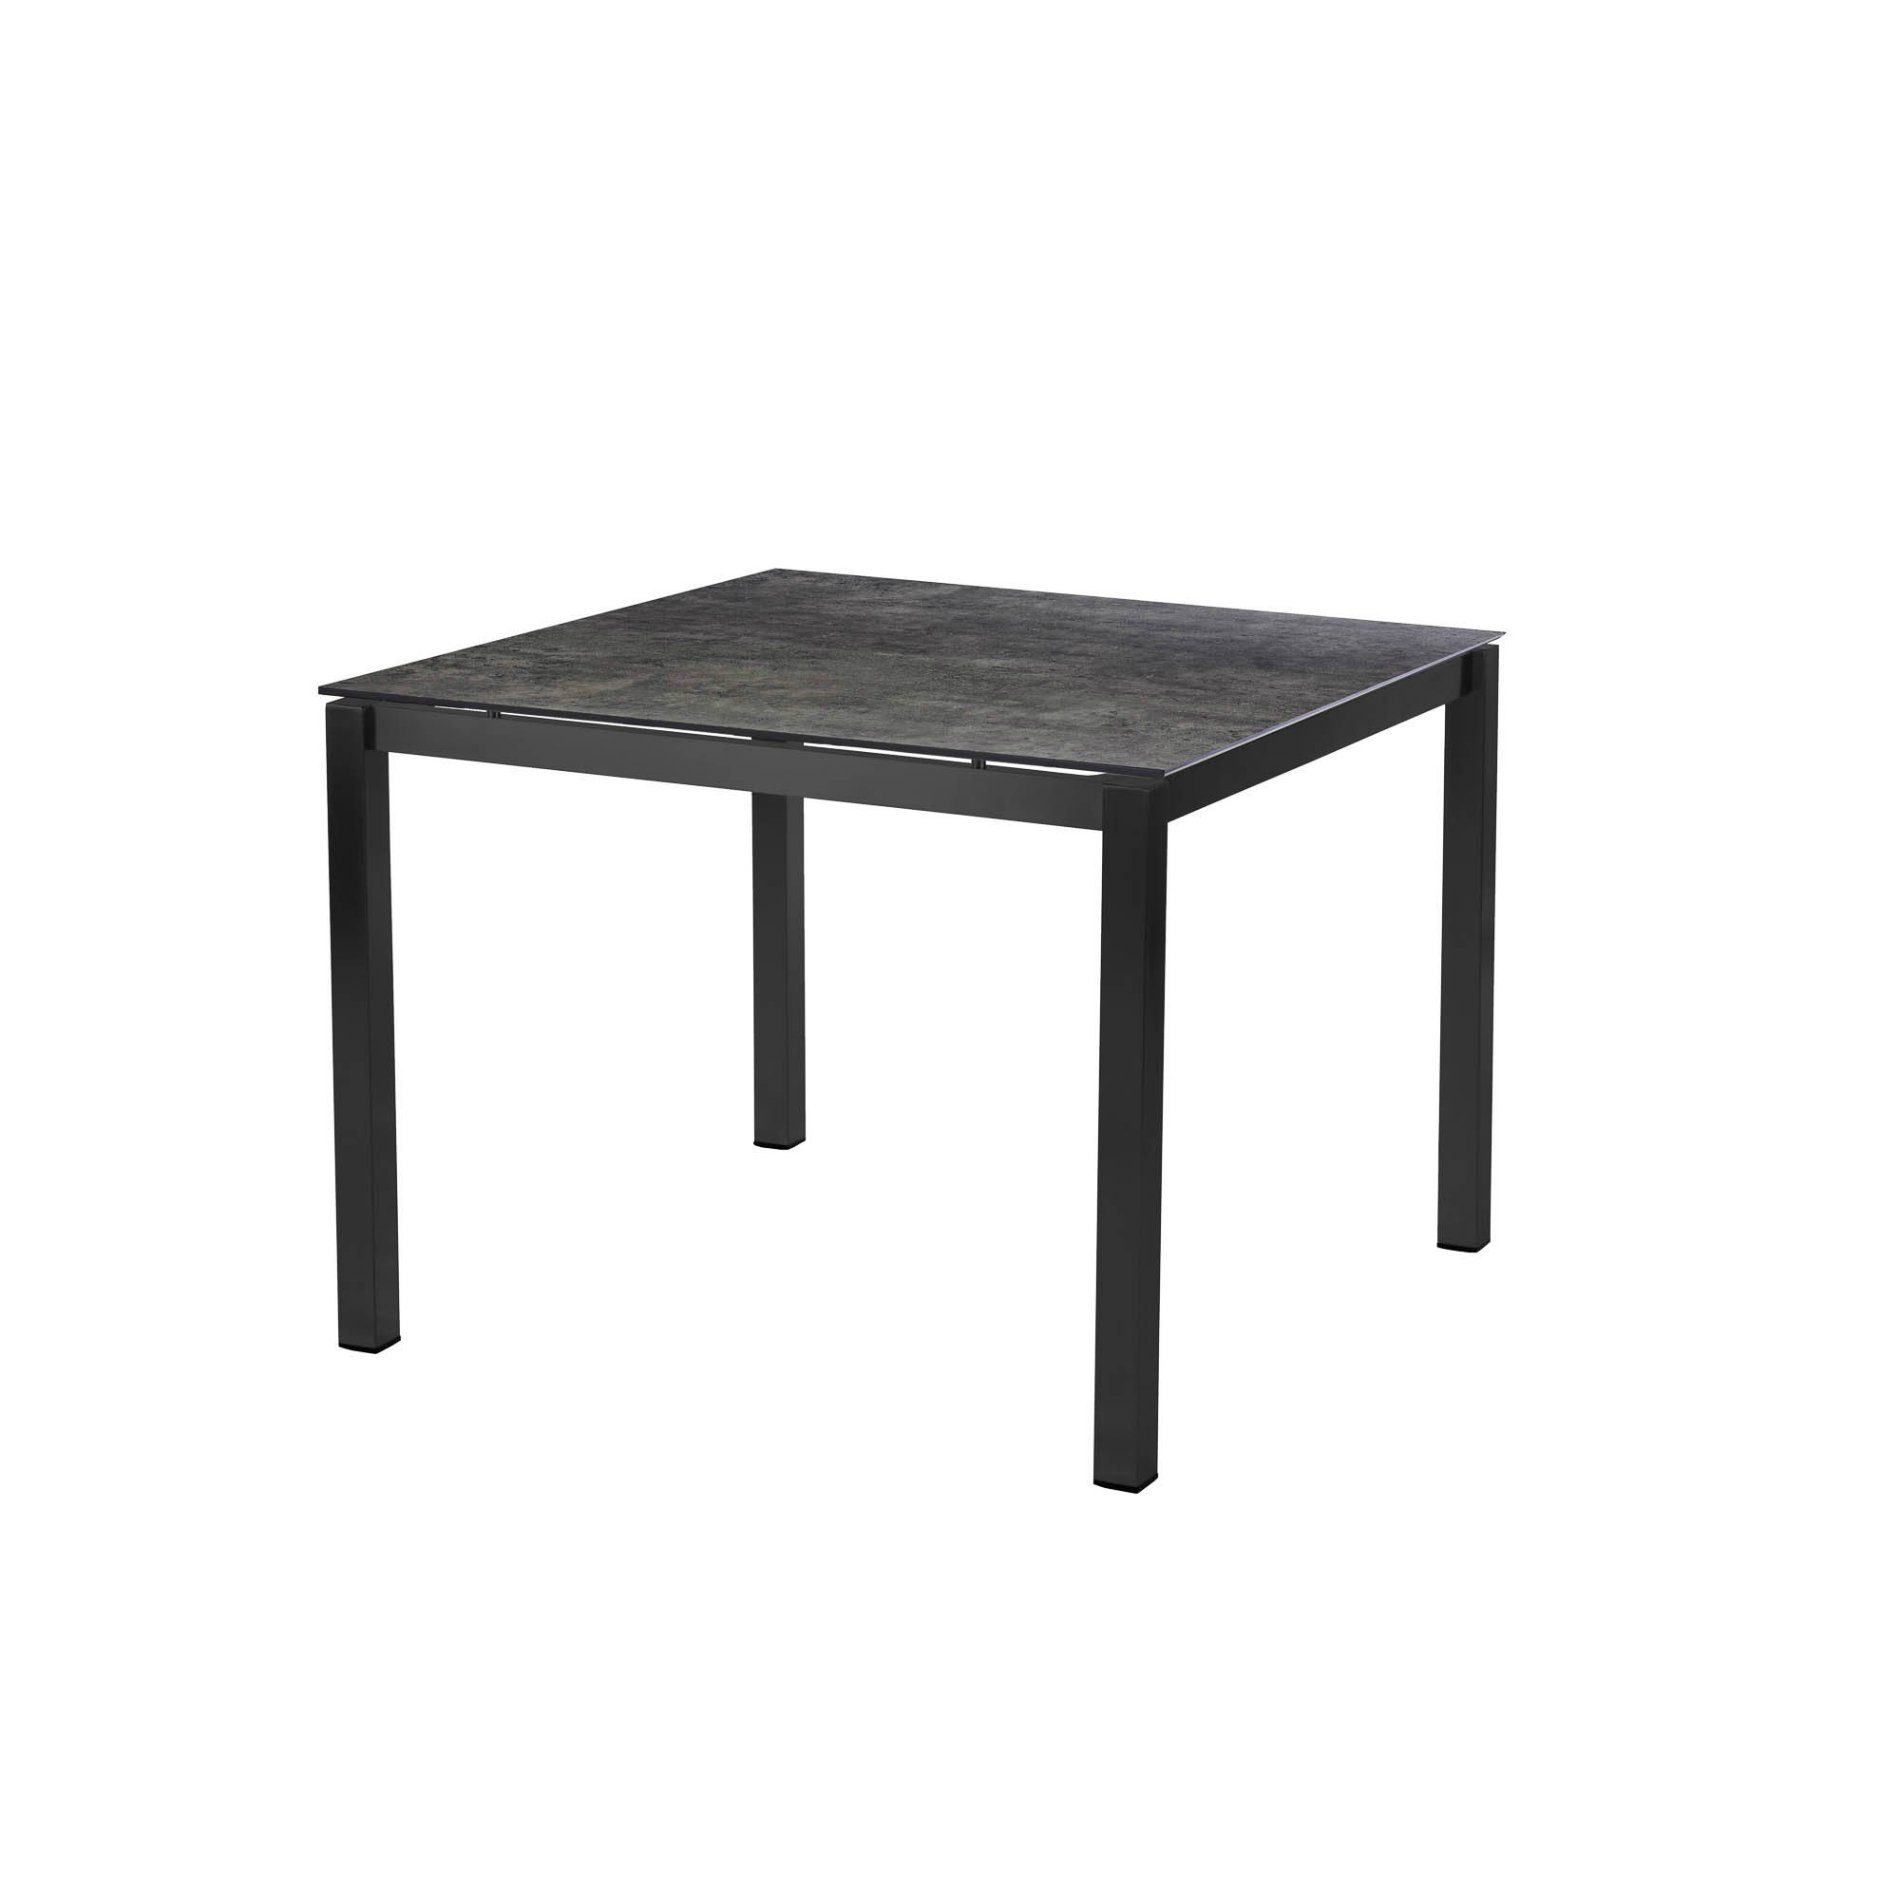 Diamond Garden Tisch "San Marino", Gestell Edelstahl dunkelgrau, Platte DiGa Compact HPL Beton dunkel, 98x98 cm